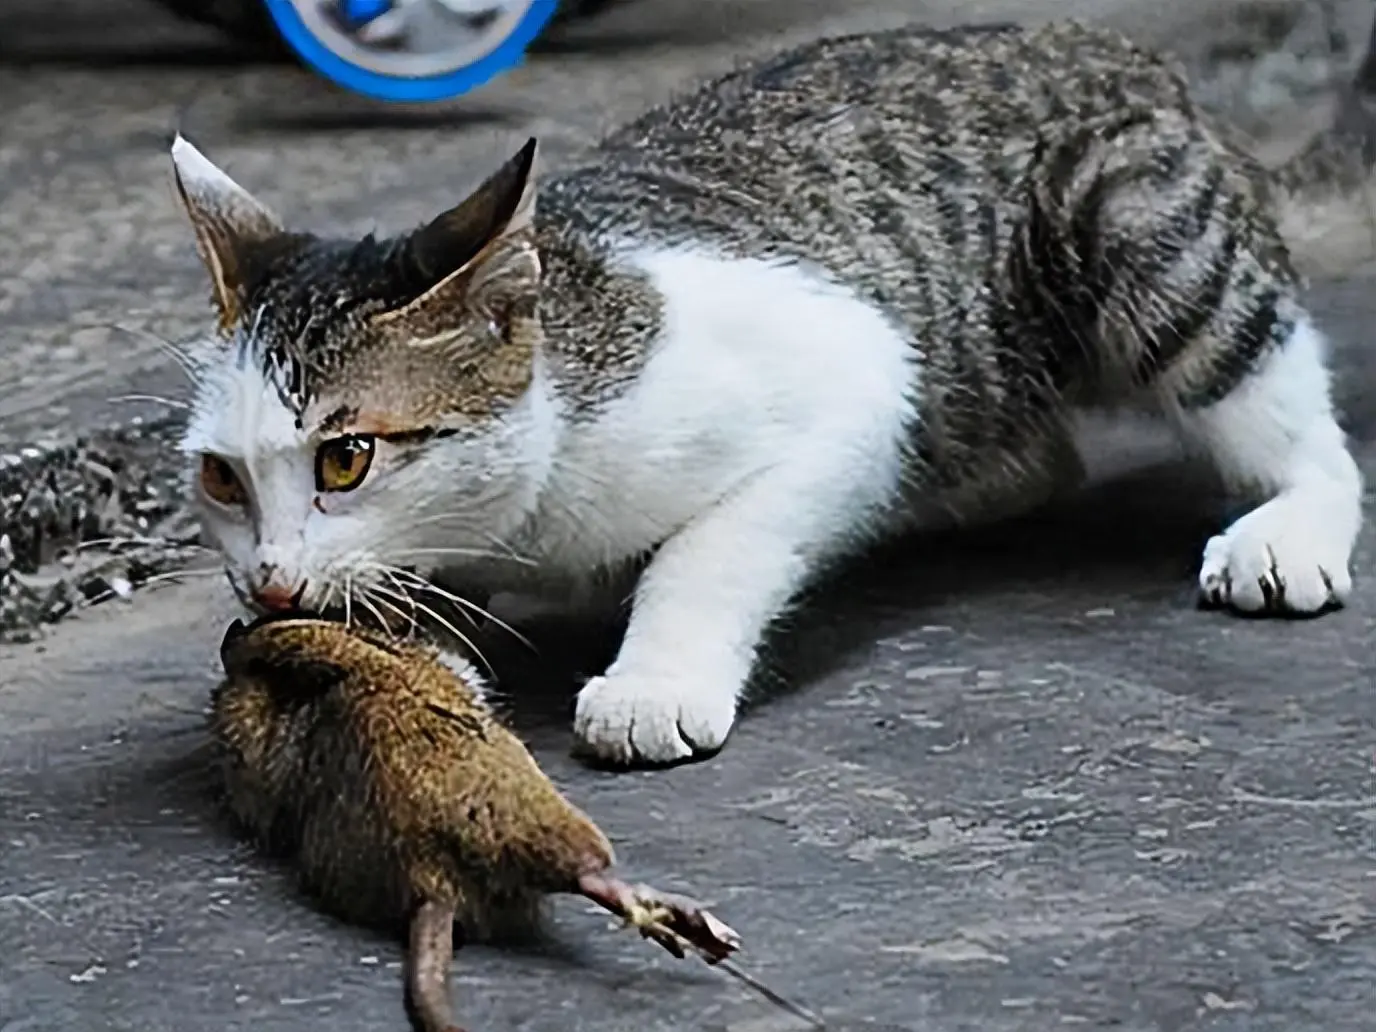 在跟猫玩耍的时候，猫咪忽然啃咬你一口是怎么回事？